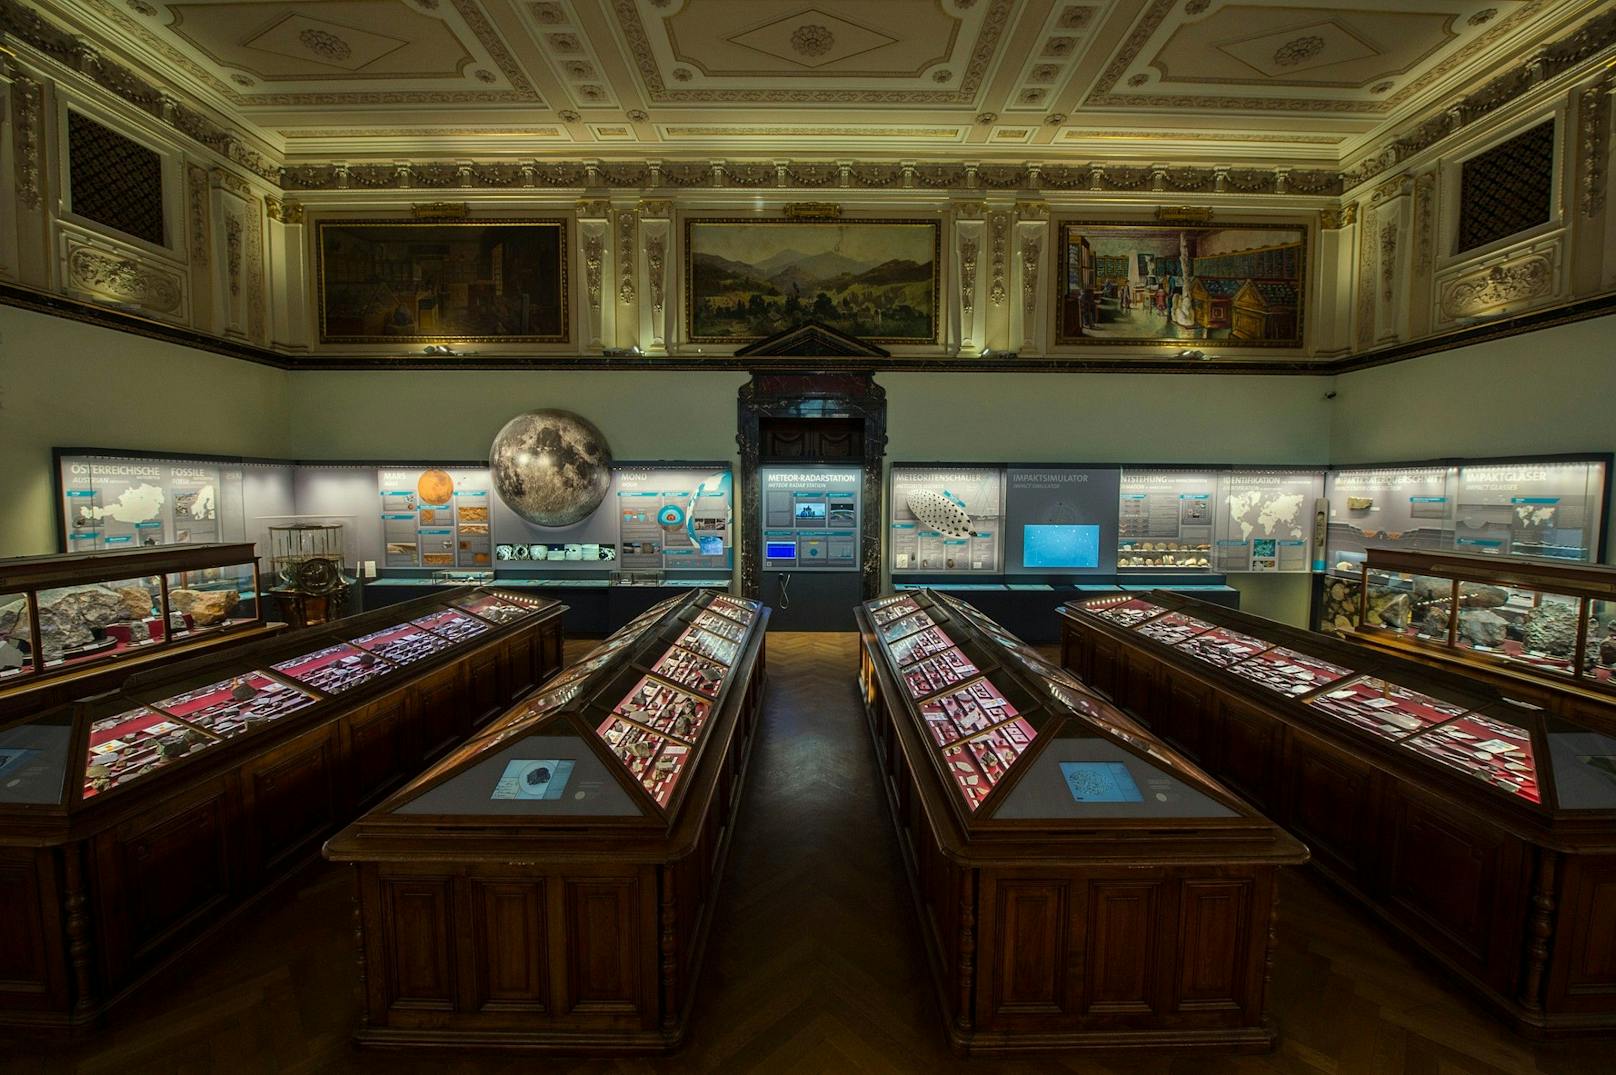 Das Naturhistorische Museum Wien beherbergt die größte Meteoritenschau der Welt mit mehr als 1.100 ausgestellten Meteoritenstücken.